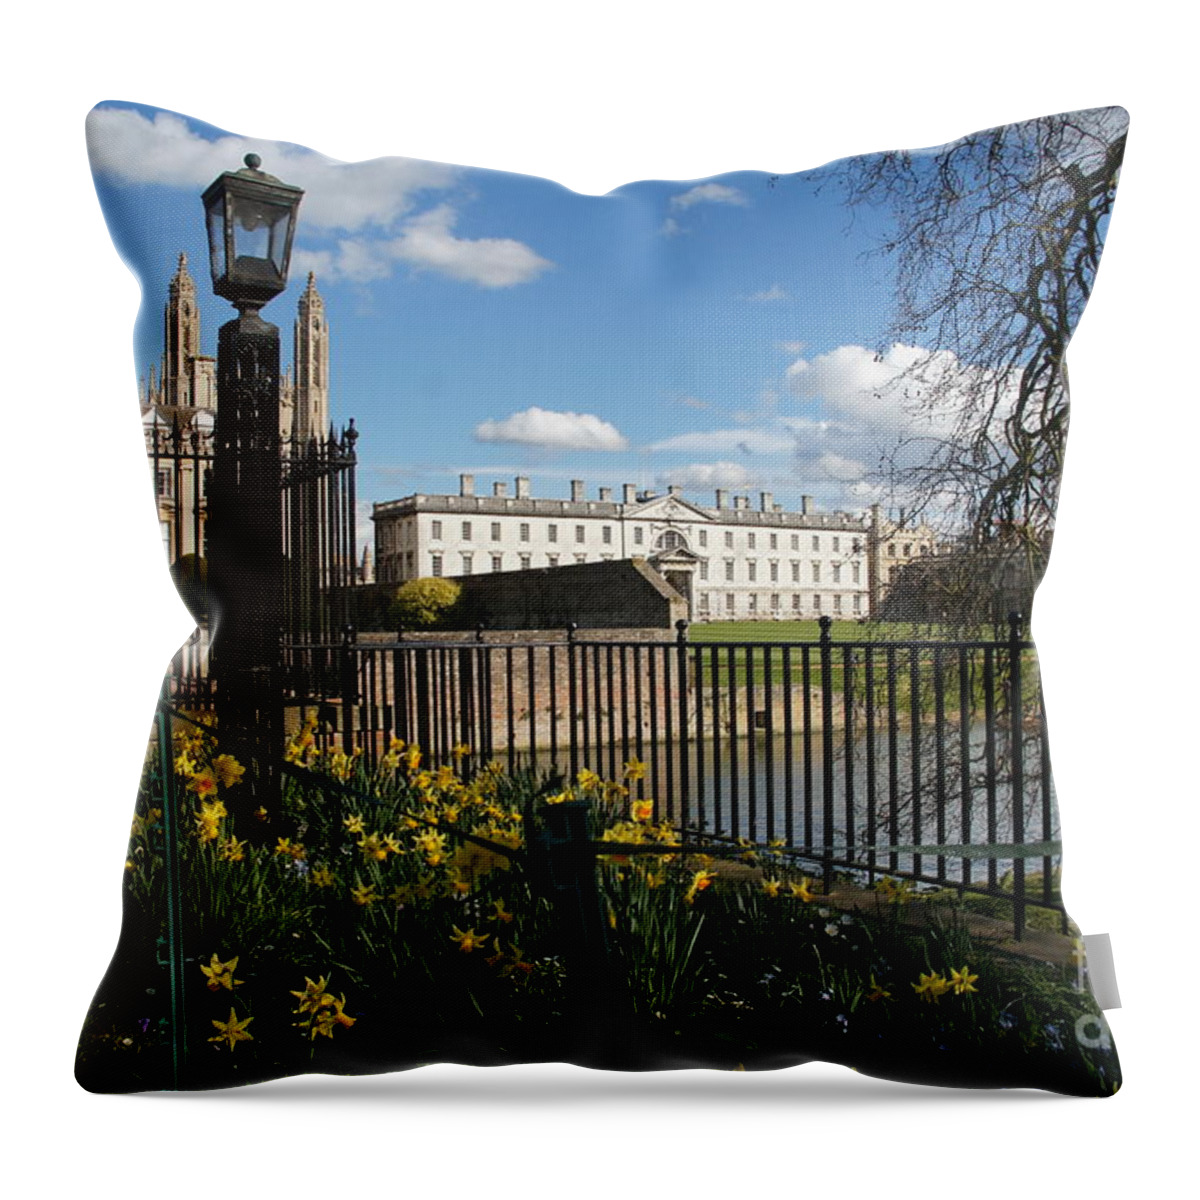 Cambridge Throw Pillow featuring the photograph Cambridge. End of March. by Elena Perelman